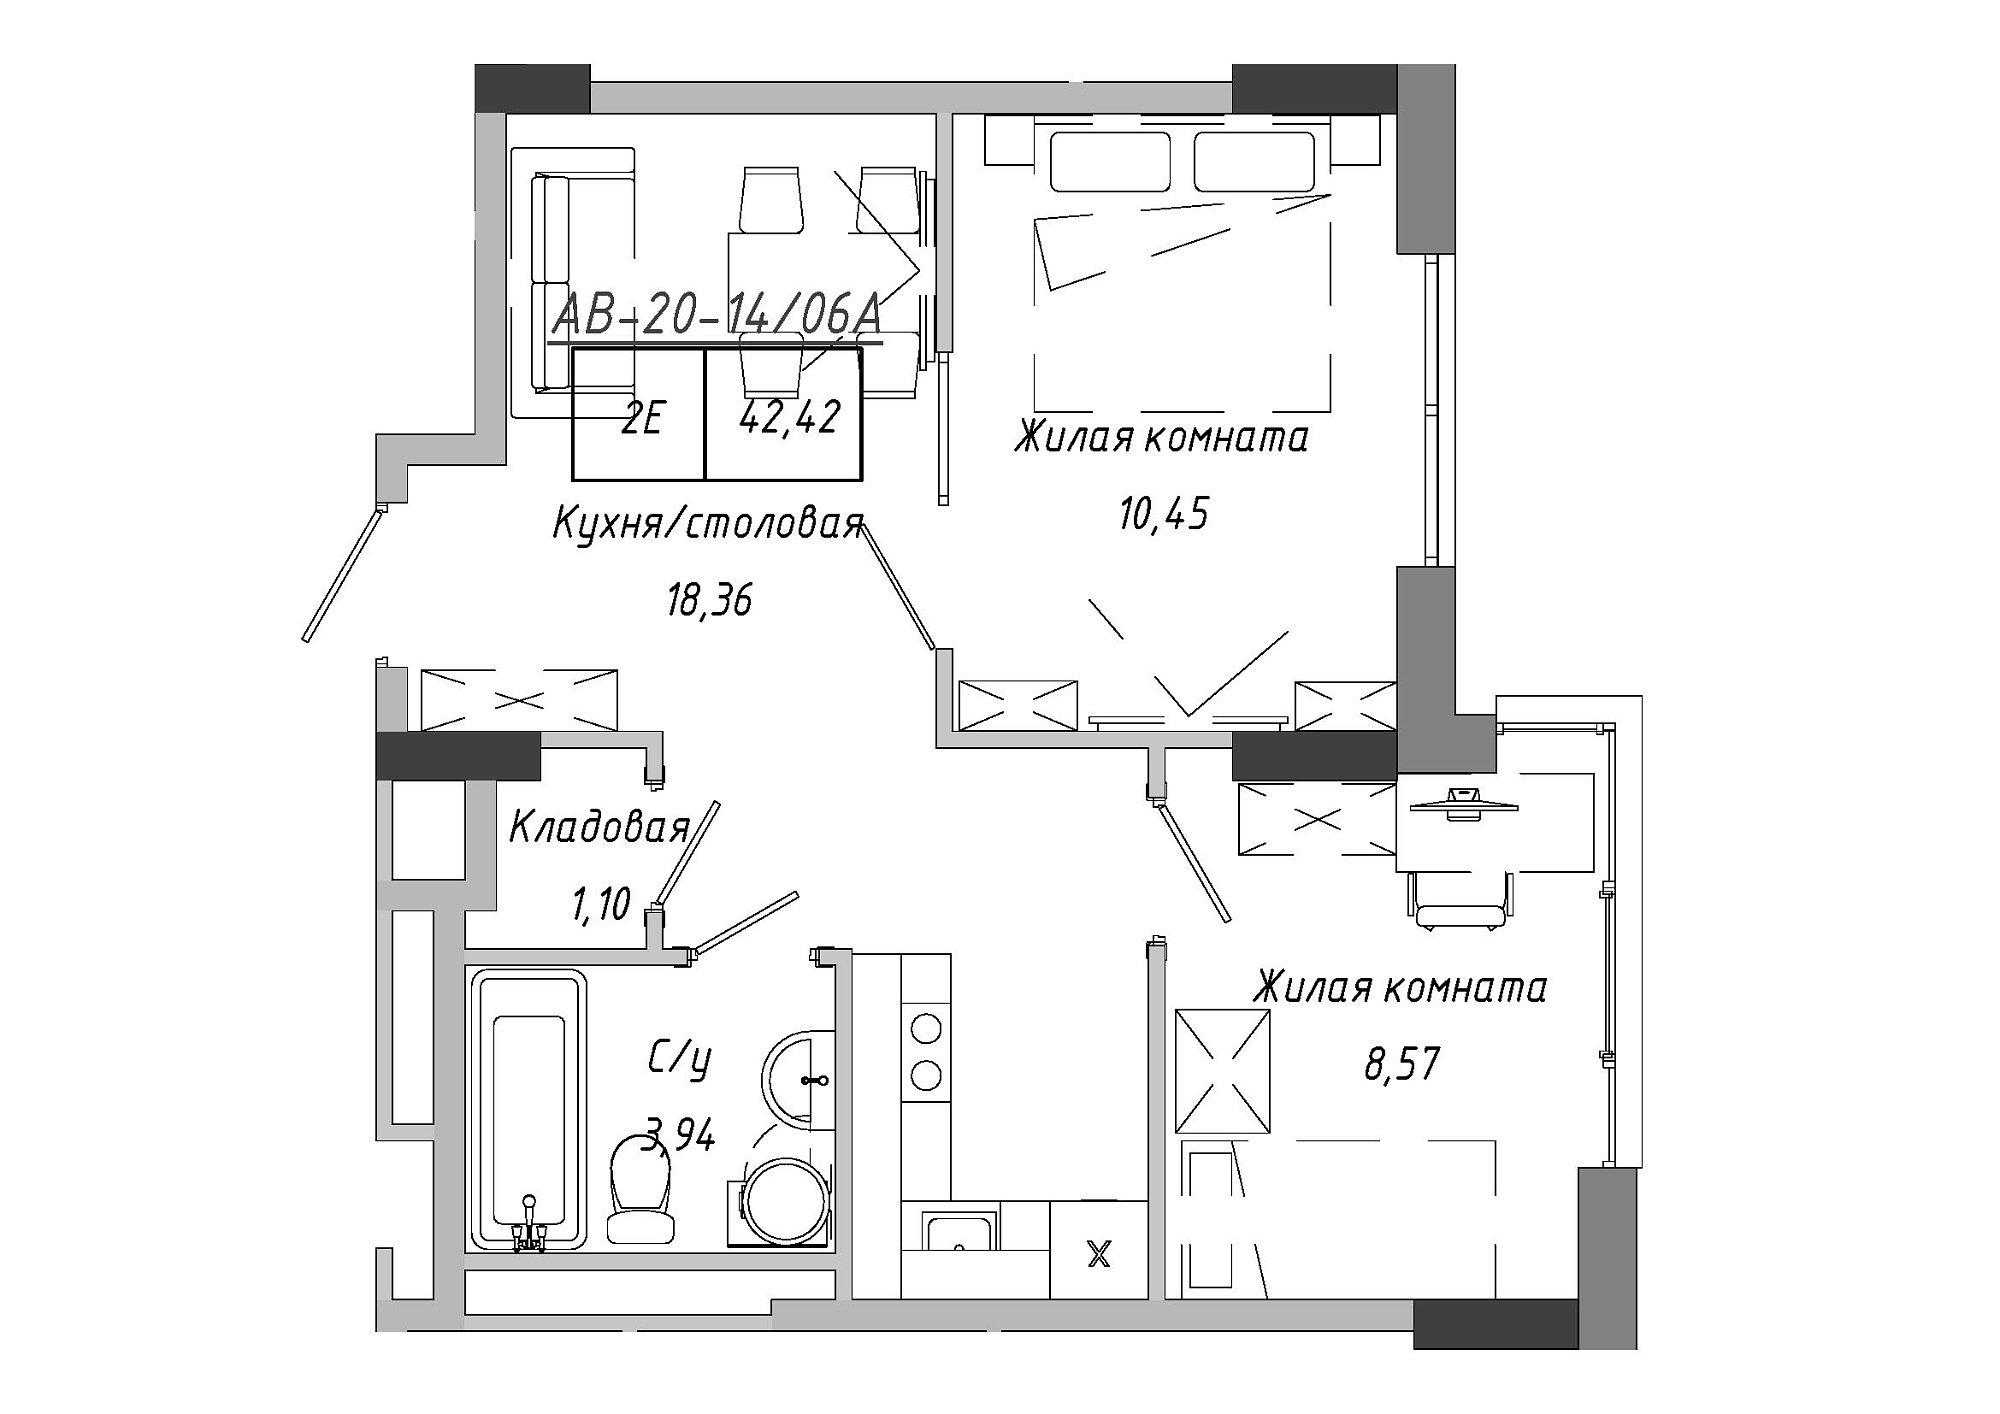 Планування 2-к квартира площею 42.42м2, AB-20-14/0106a.